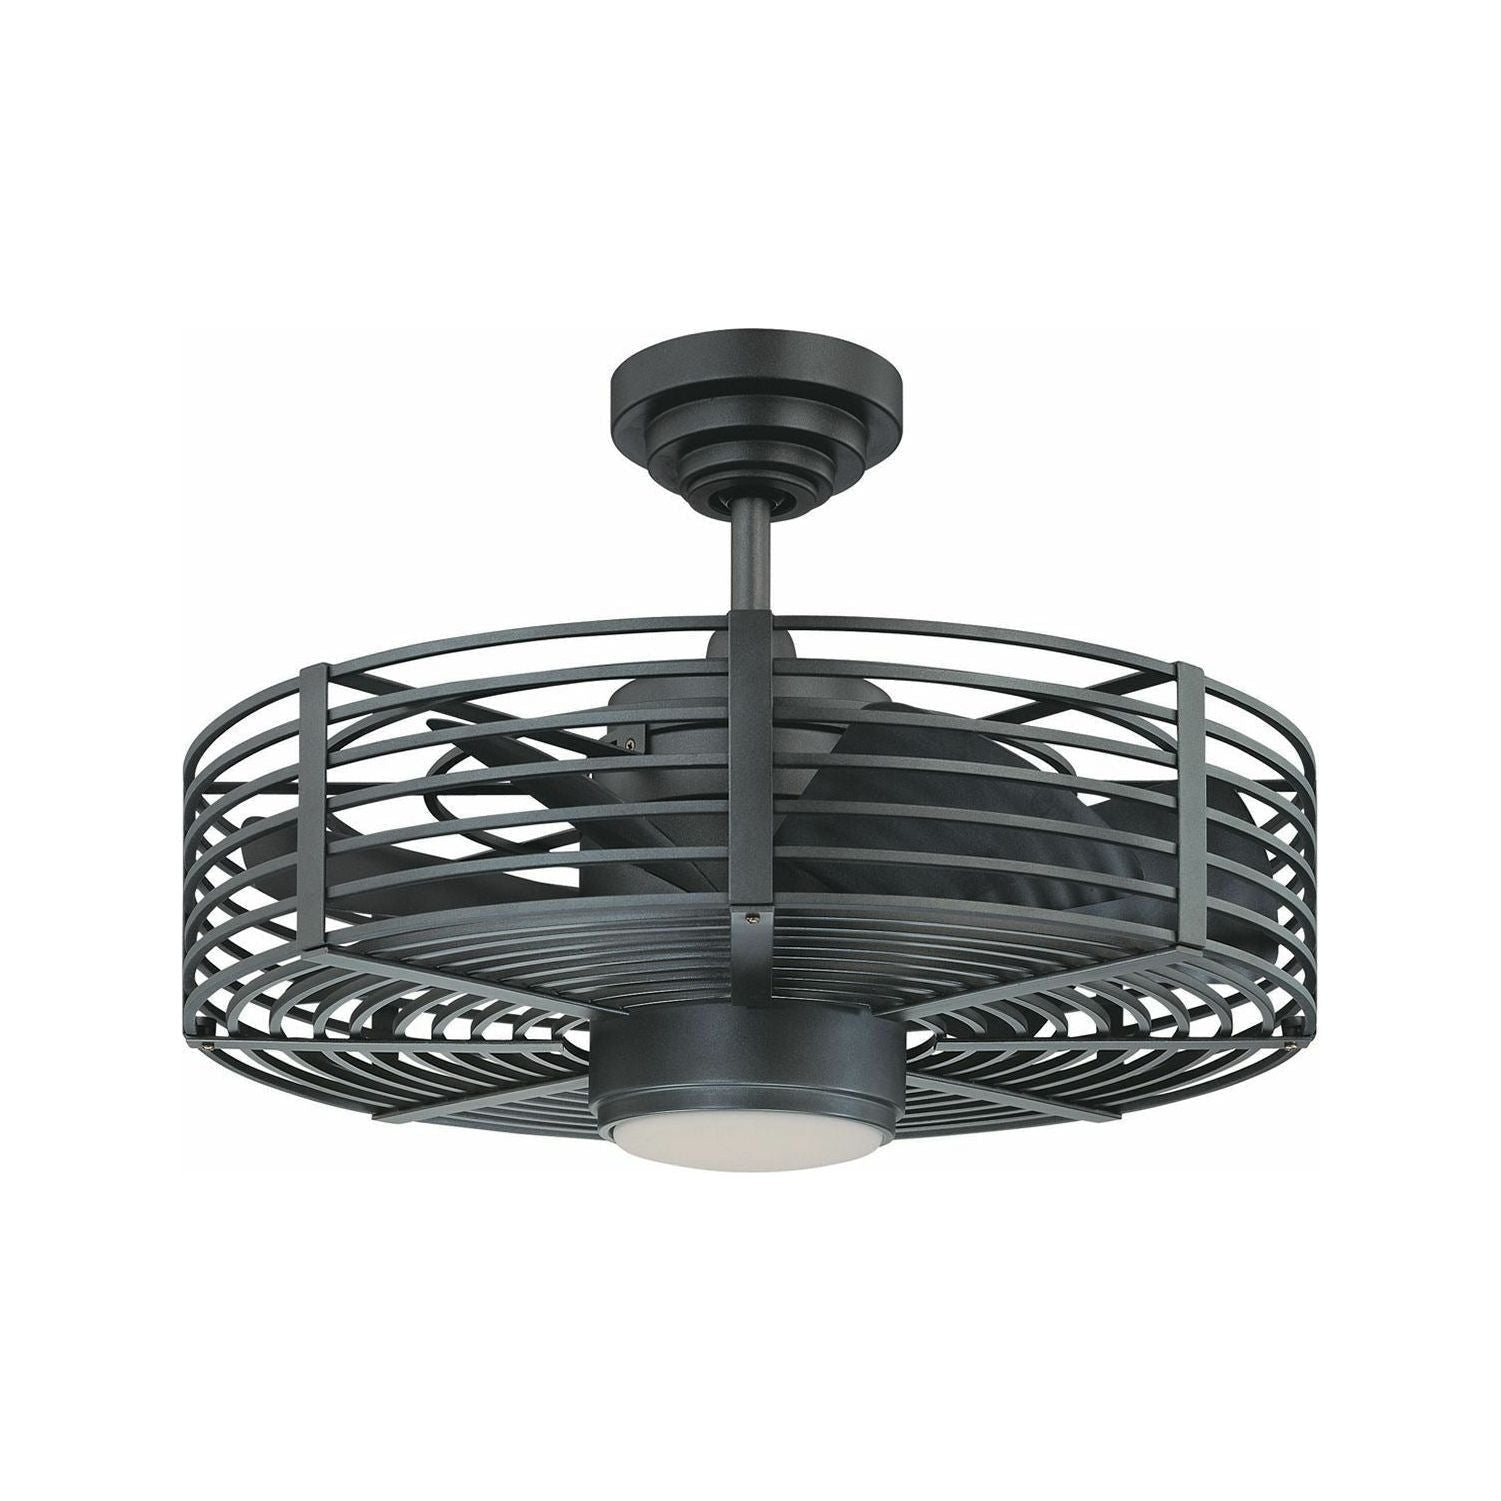 Enclave LED Ceiling Fan